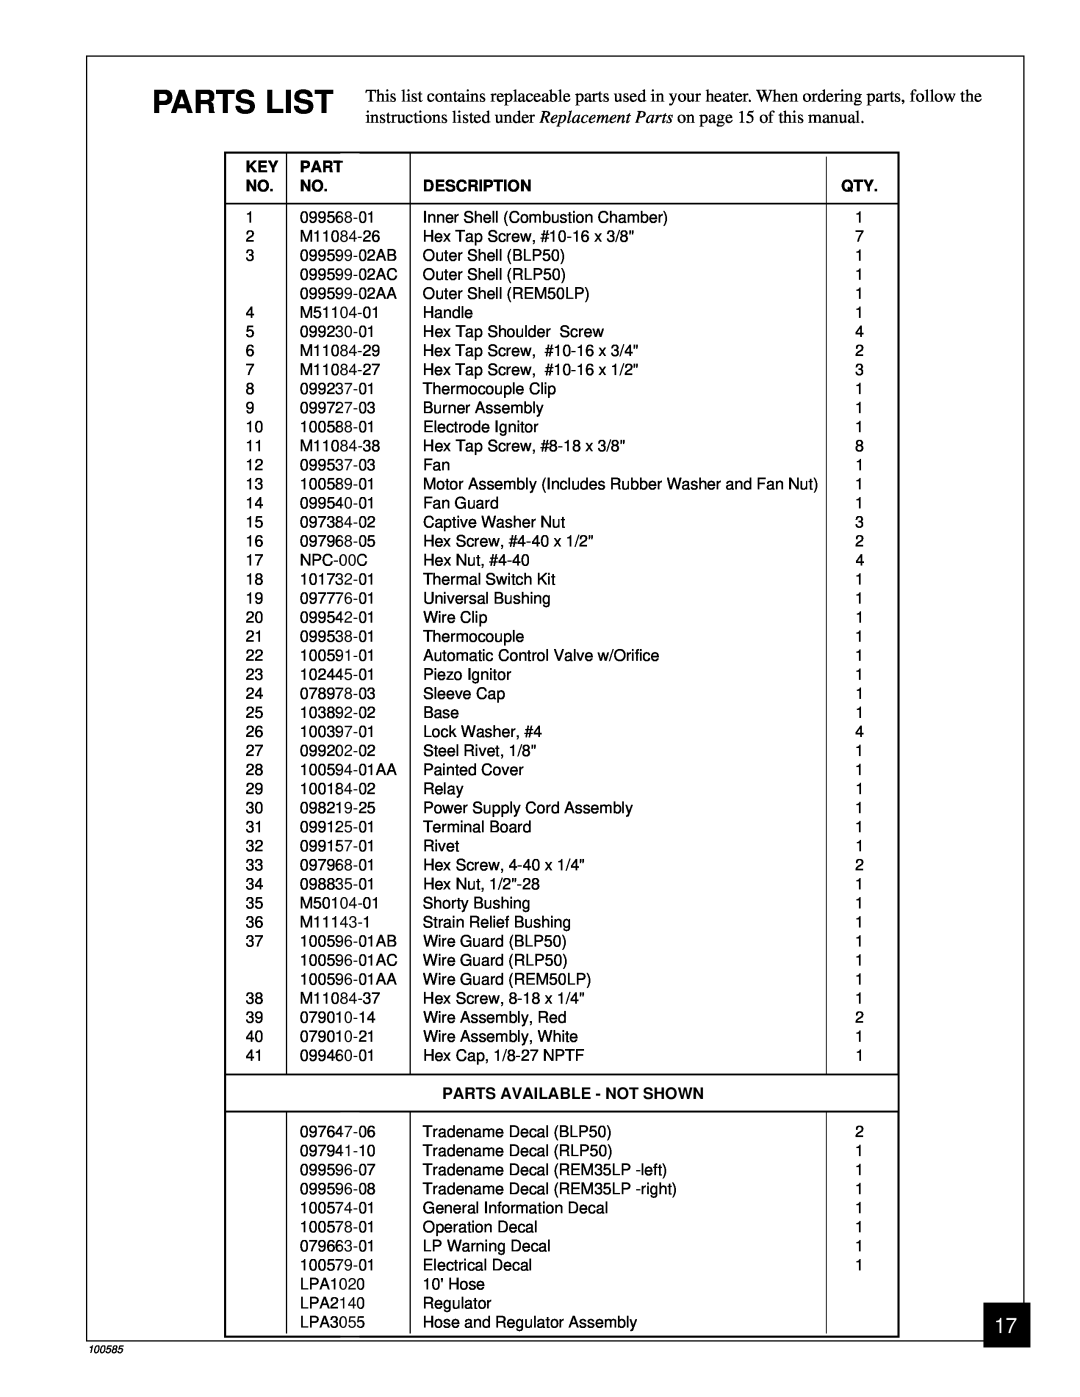 Desa BLP155AT owner manual Parts List, Description, Parts Available - Not Shown 